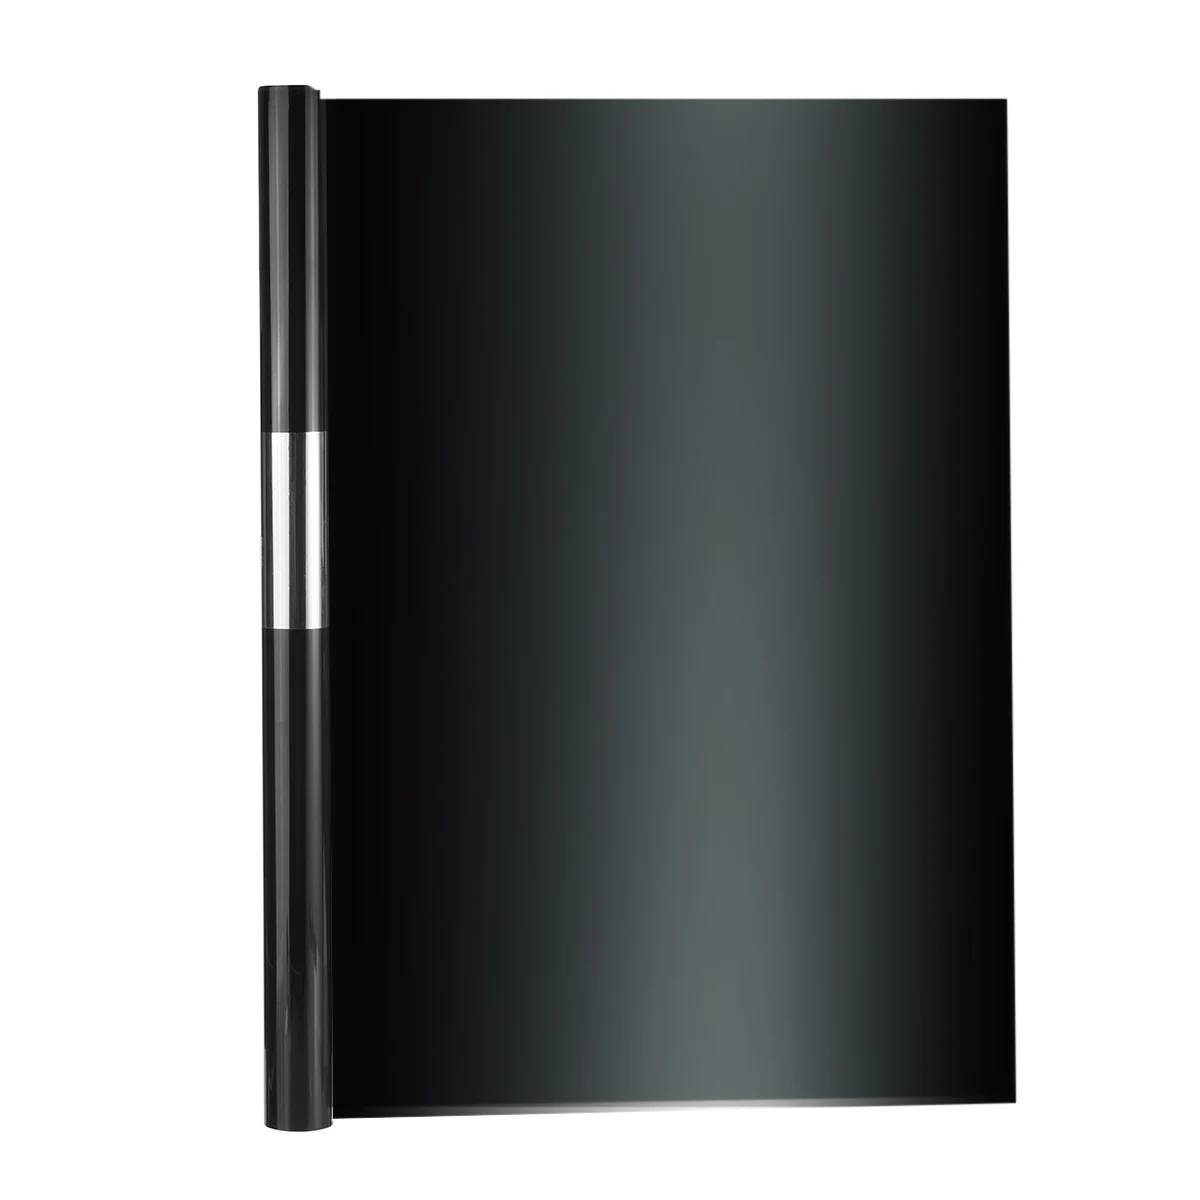 Оконное стекло оттенок УФ Отражающая пленка рулон 50 см x 1 м/3 м/6 м домашний офис 15-22% VLT безопасный Анти-взрыв солнцезащитный блок ПЭТ Материал - Цвет: Black 3 M